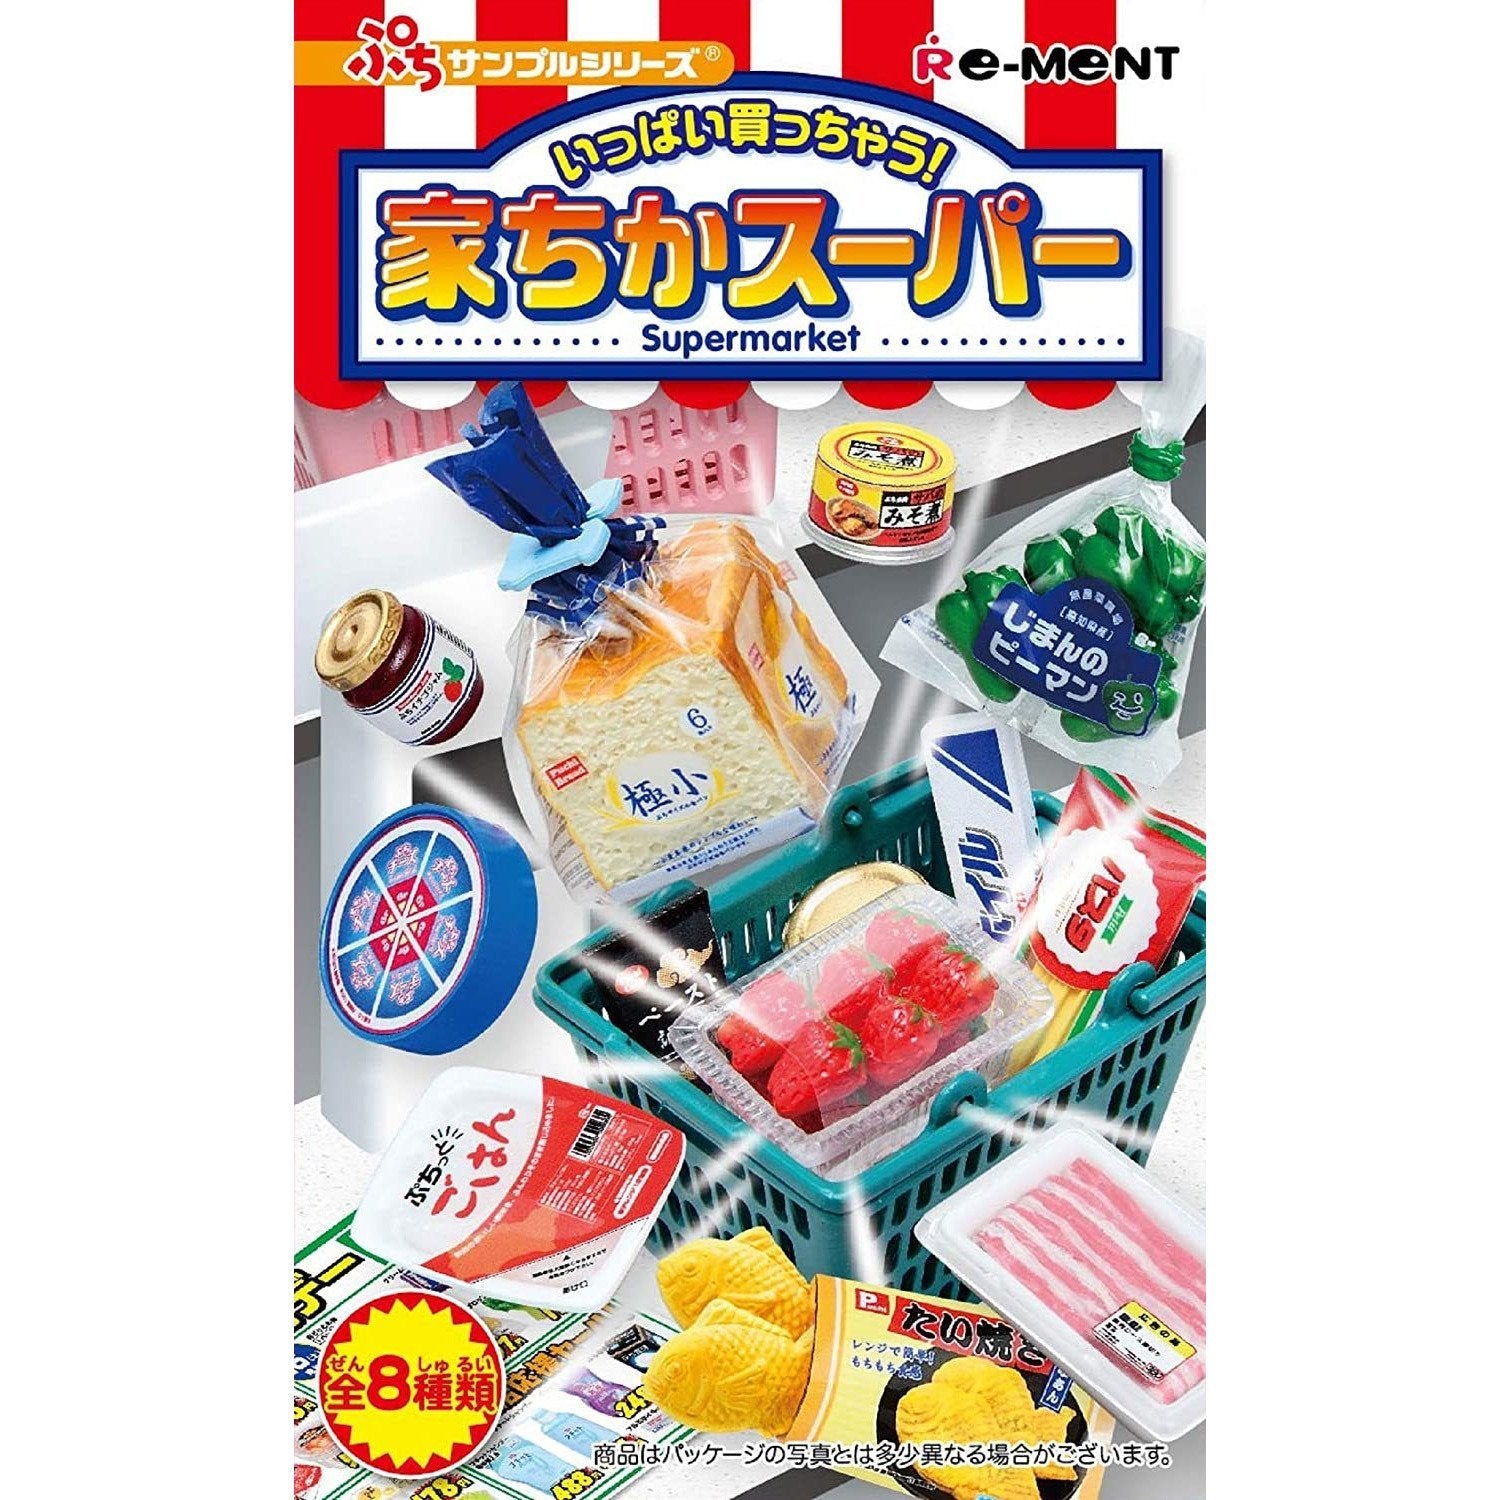 Re-Ment Petit Sample -Supermarket-Single (Random)-Re-Ment-Ace Cards & Collectibles